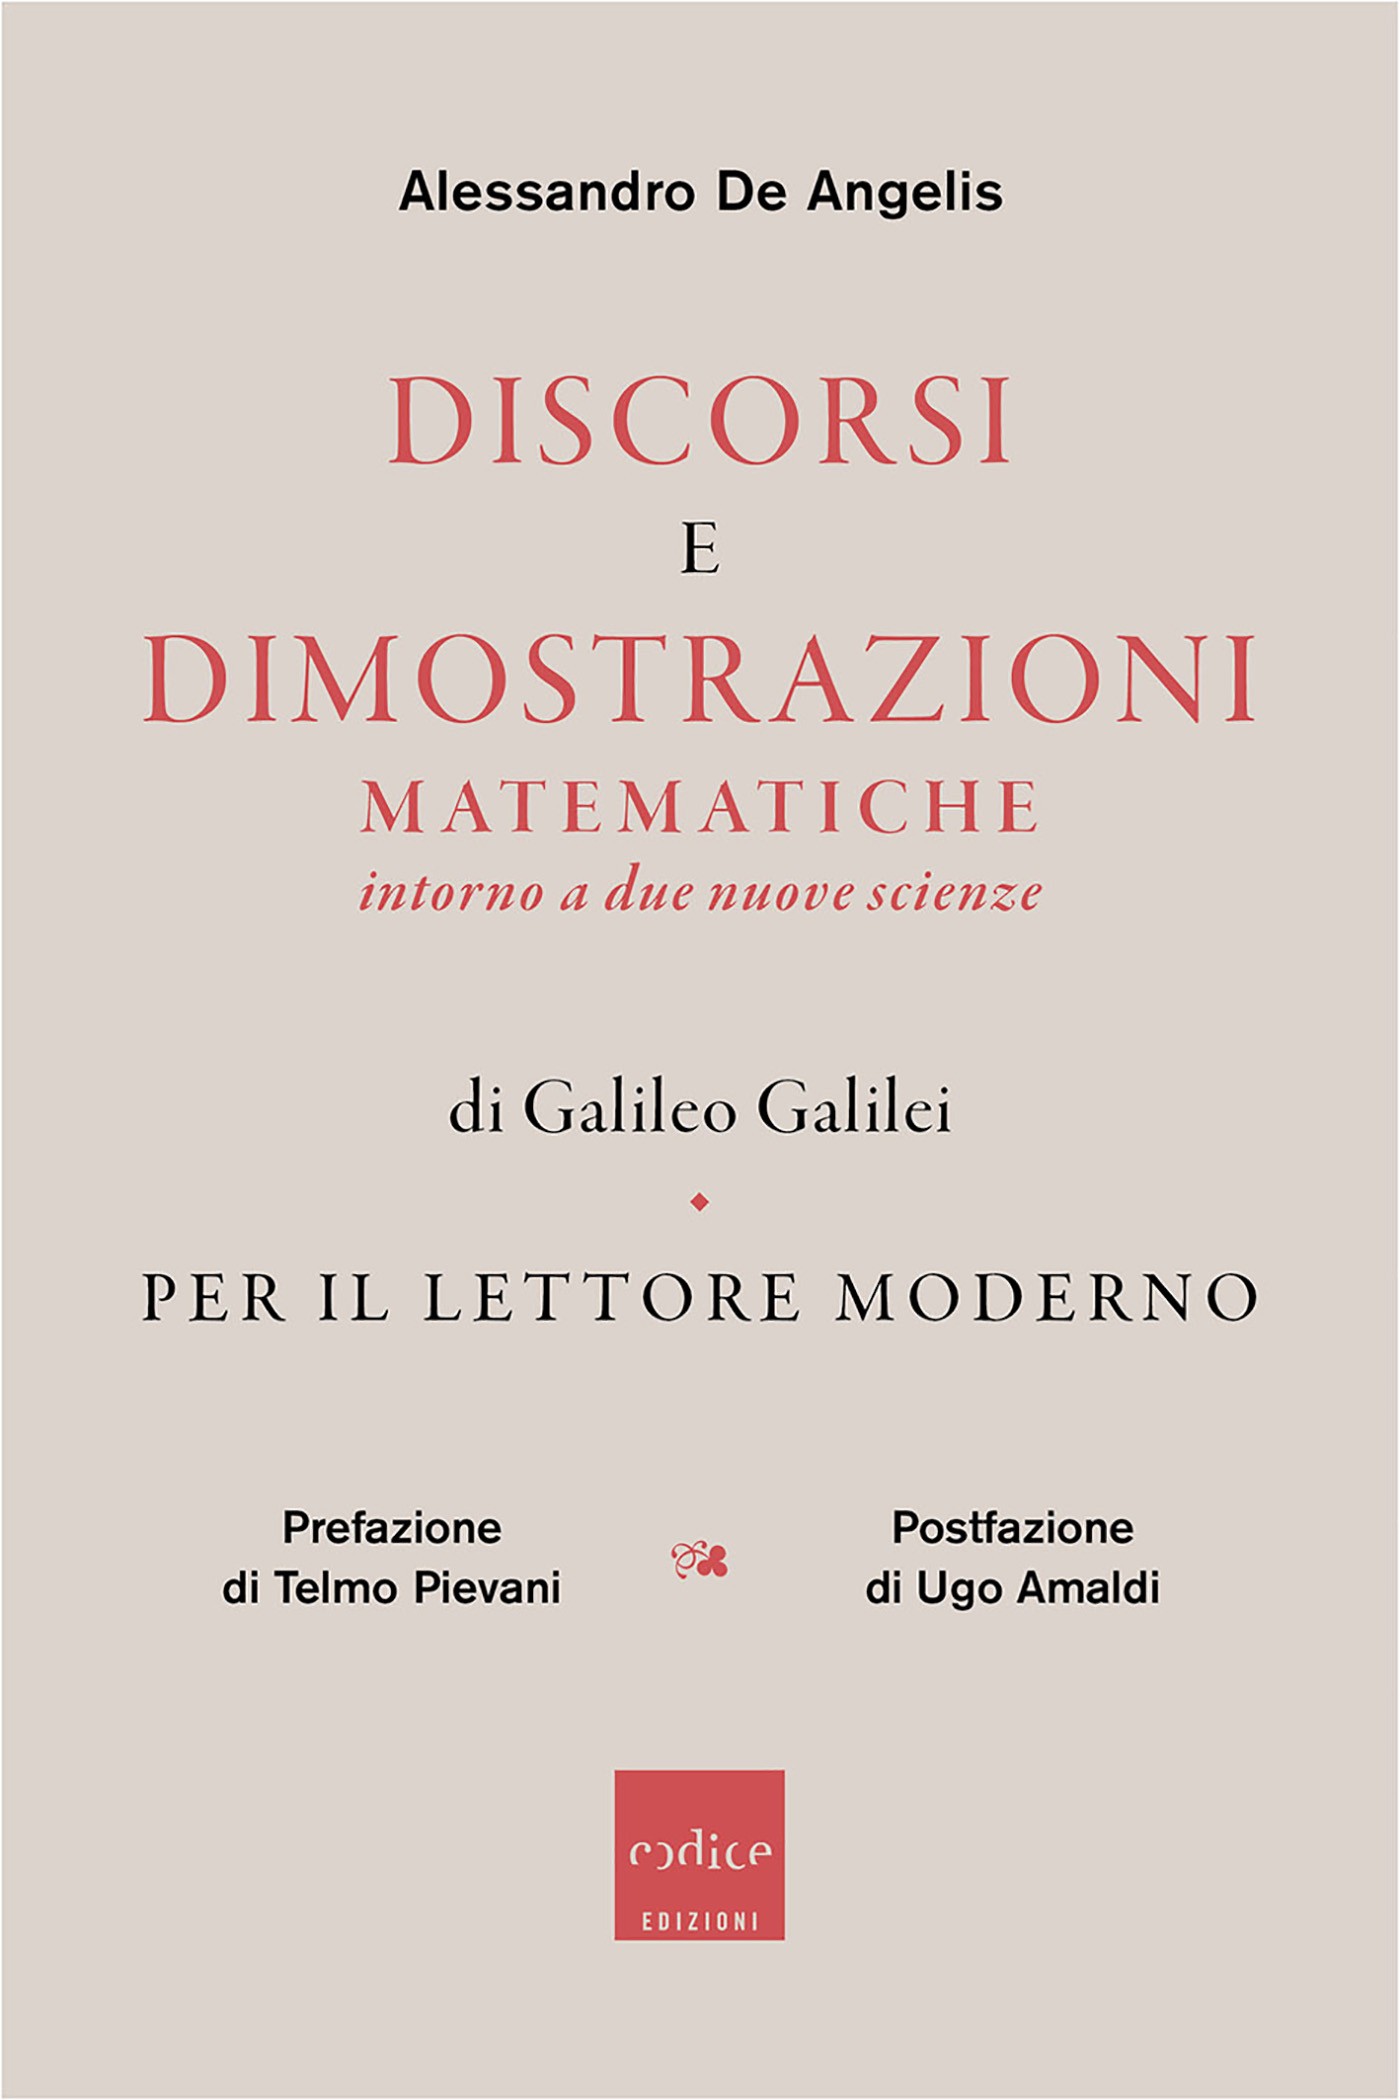 Discorsi e dimostrazioni matematiche intorno a due nuove scienze di Galileo Galilei per il lettore moderno - Librerie.coop